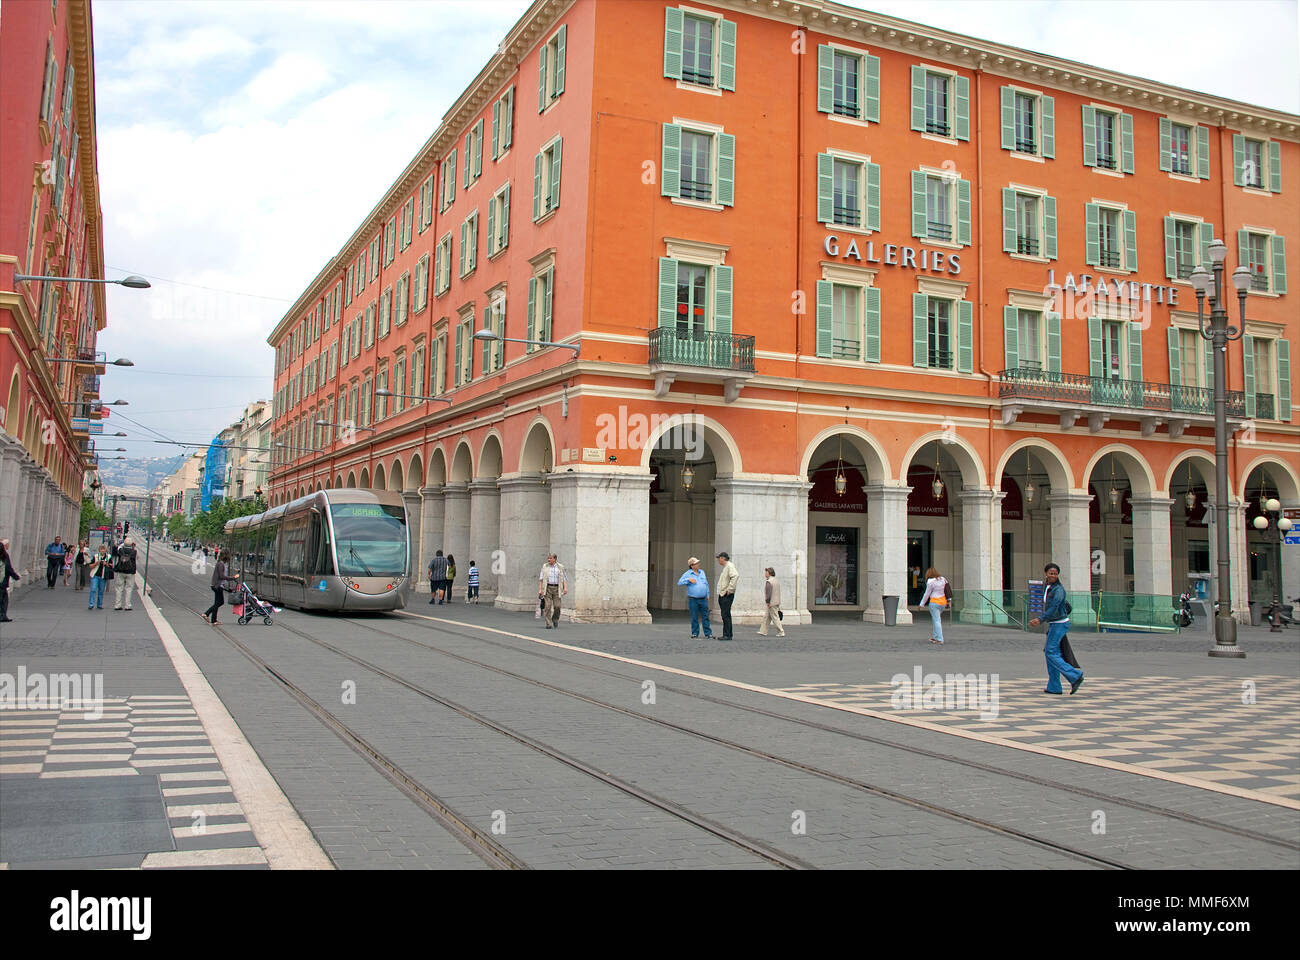 Linien d'Azur, Straßenbahn am Einkaufszentrum Lafayette, Place Masséna, Nizza, Côte d'Azur, Alpes Maritimes, Südfrankreich, Frankreich, Europa Stockfoto